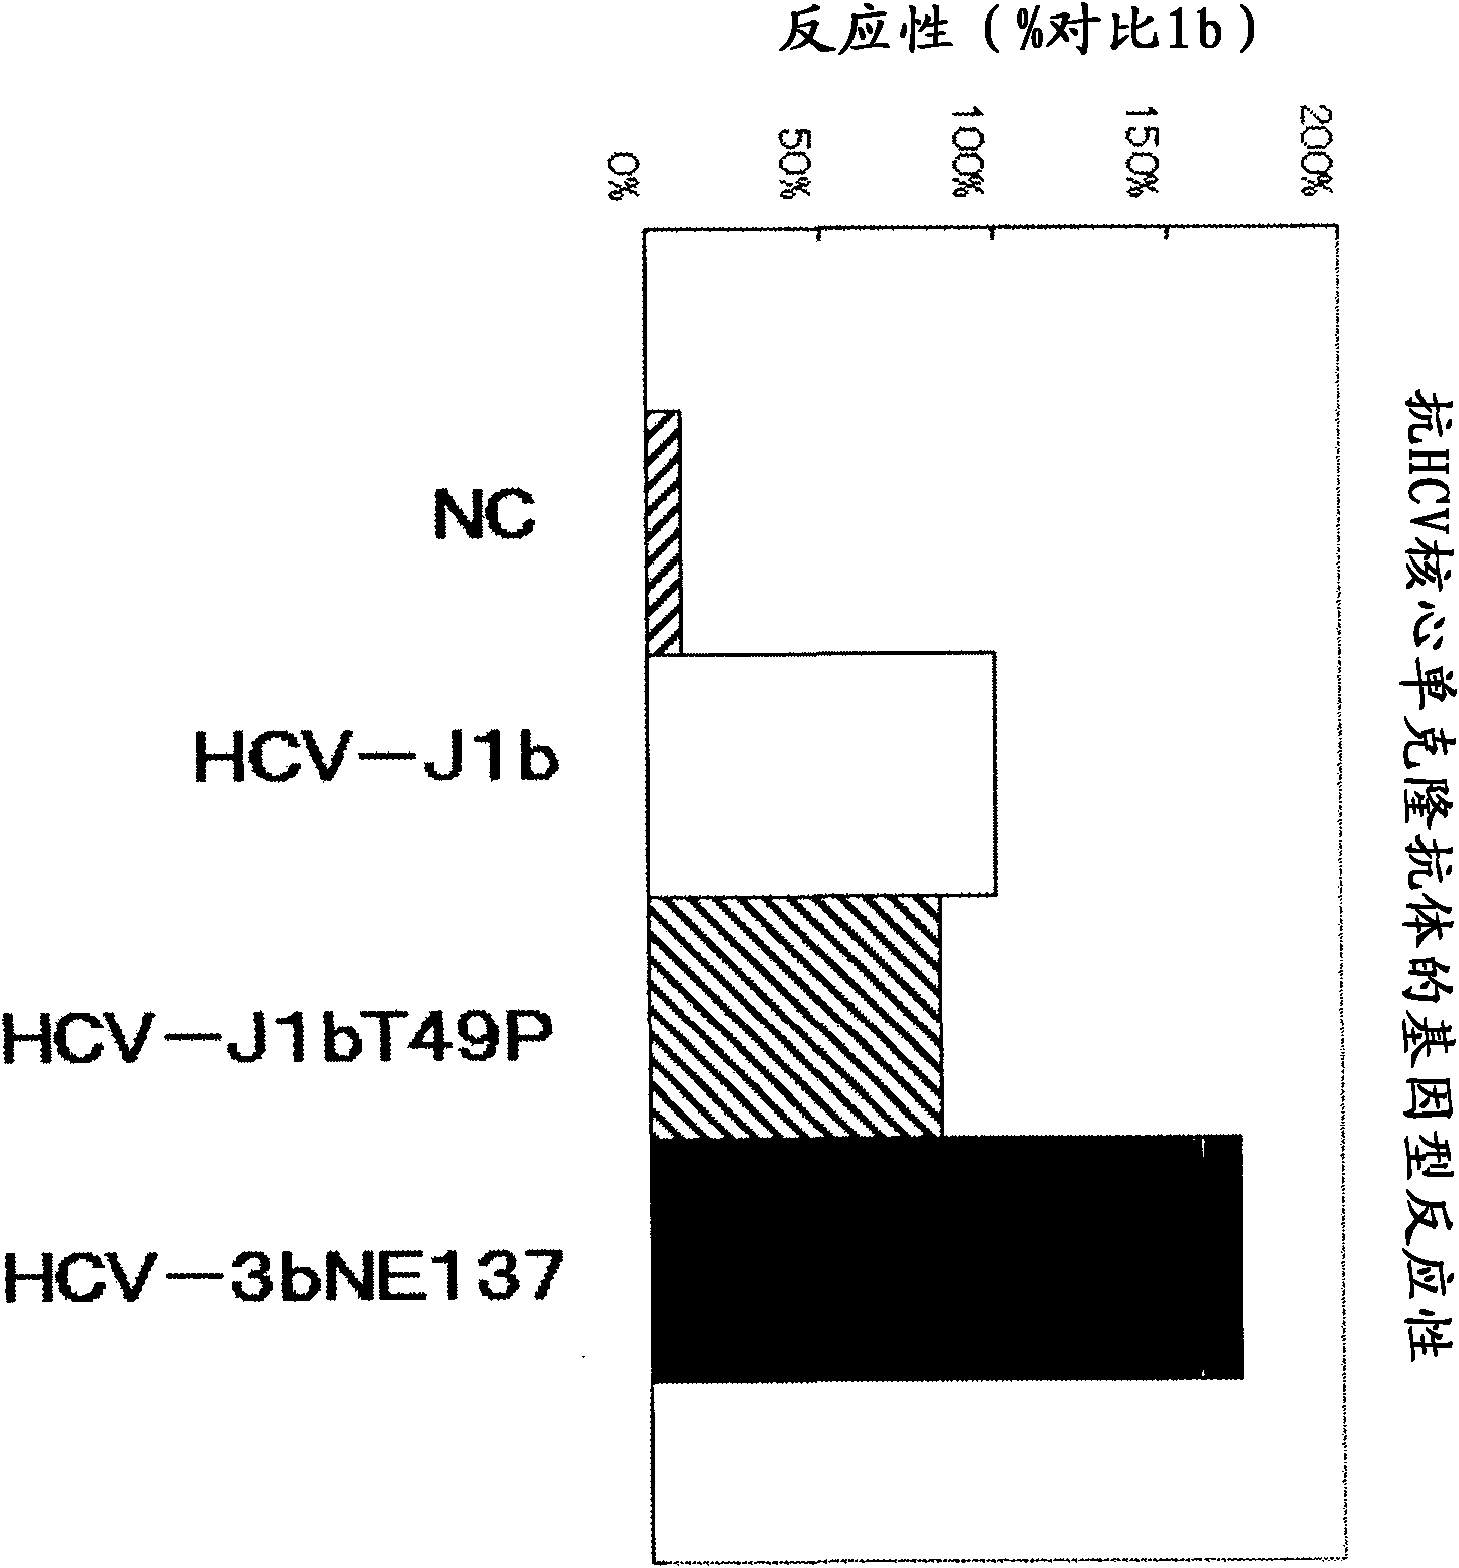 Method for pretreating sample and method for immunoassay of hcv